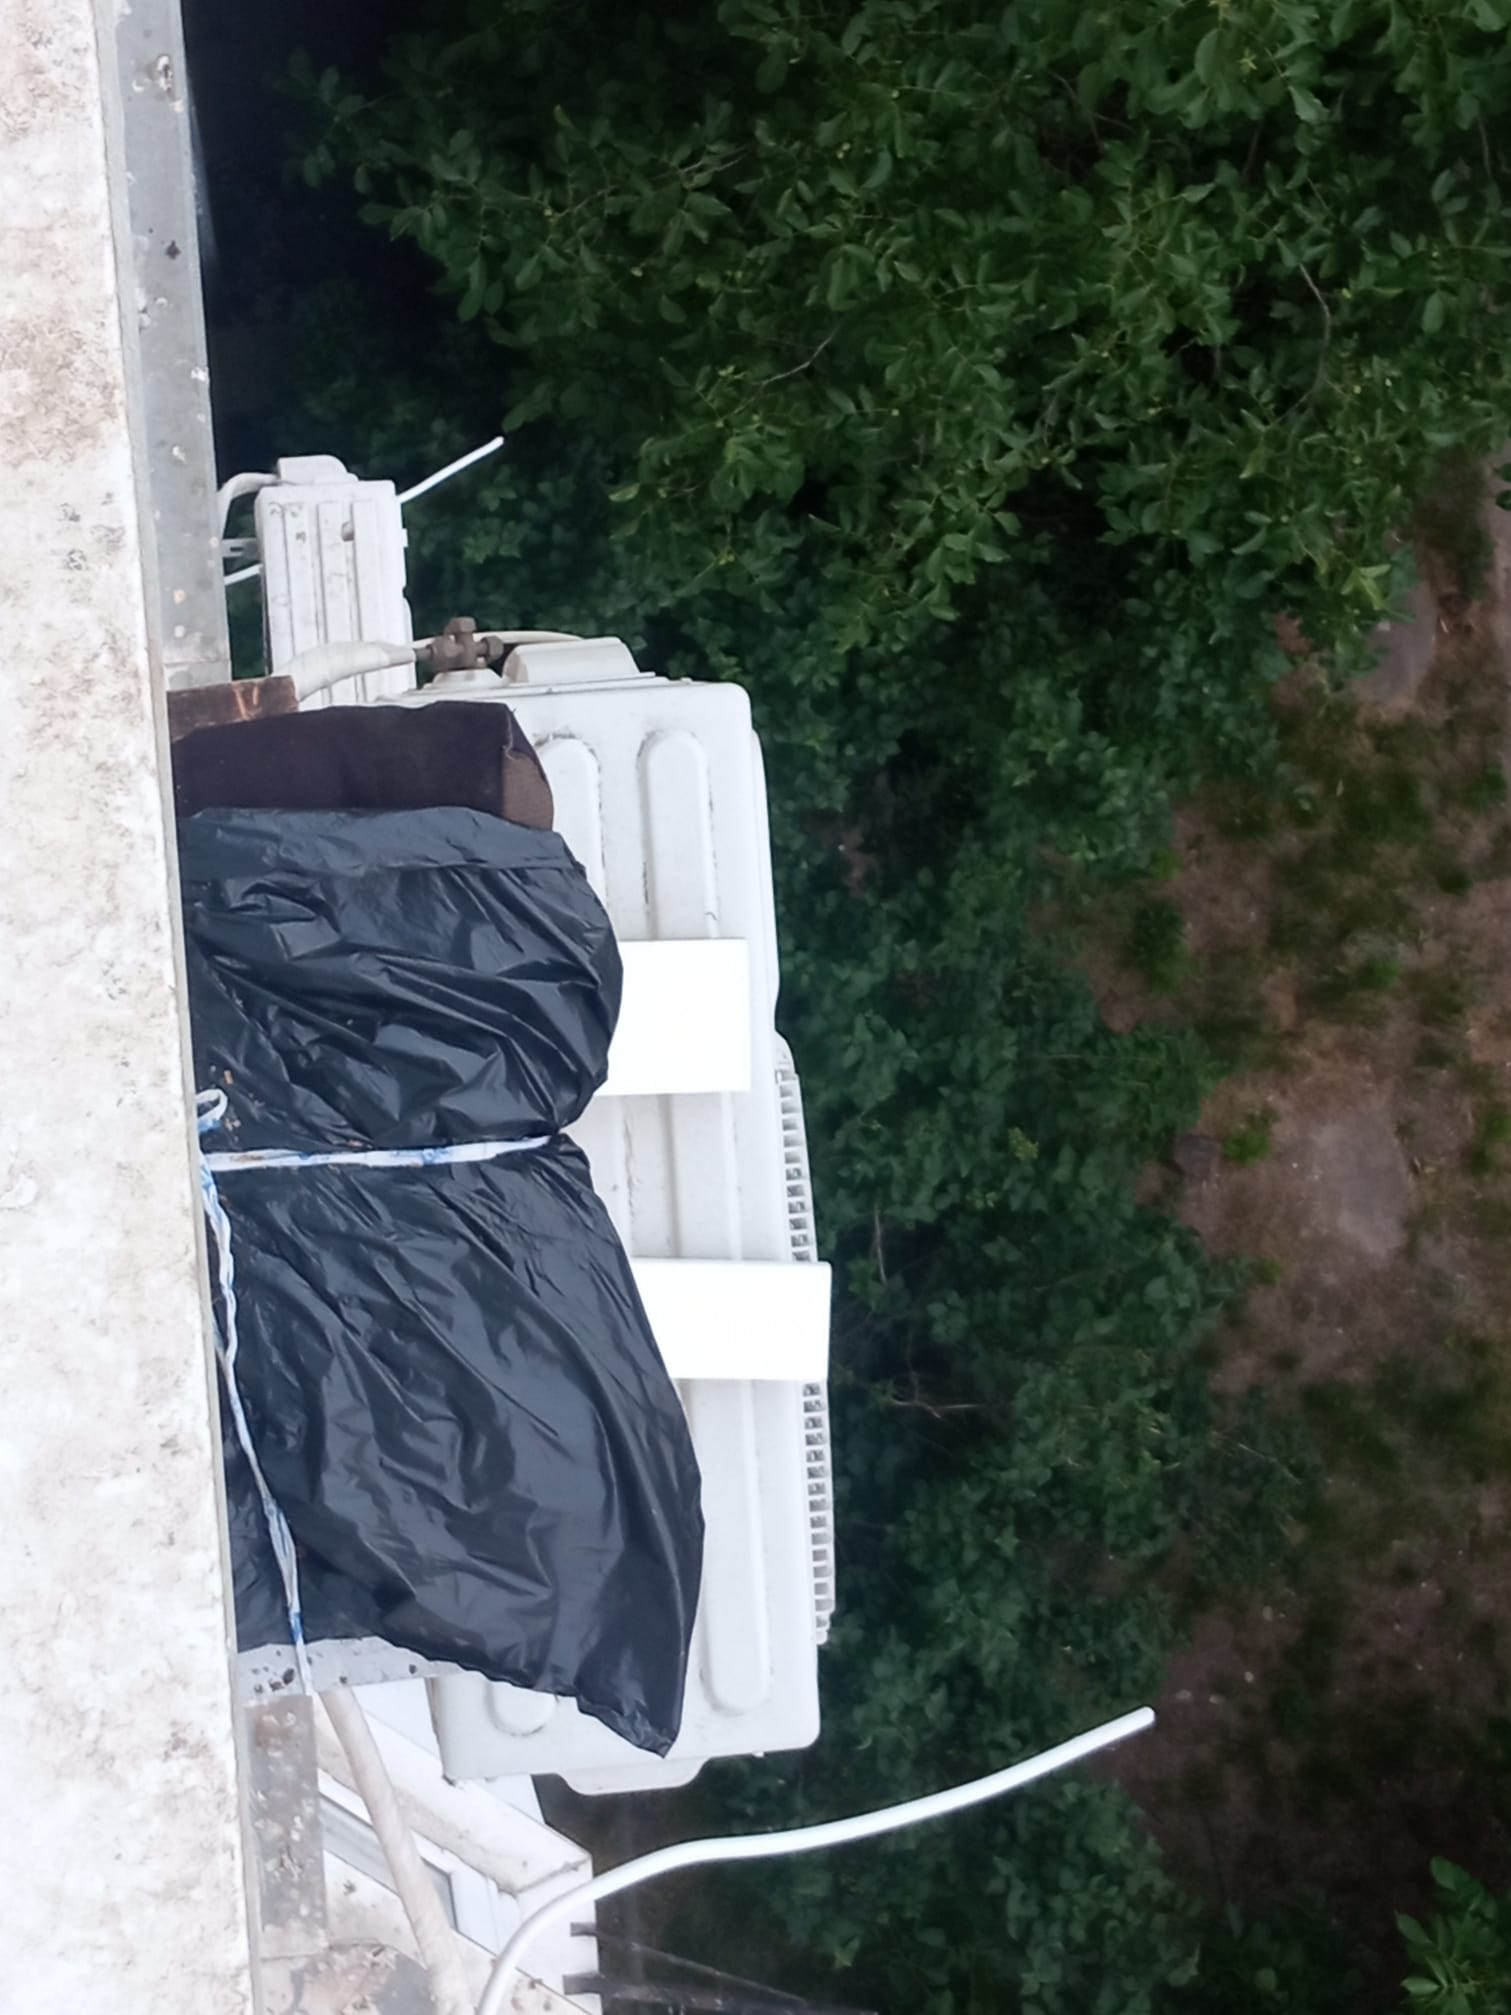 (ВИДЕО) Пчелы на балконе. Житель Кишинева устроил пасеку в своей квартире